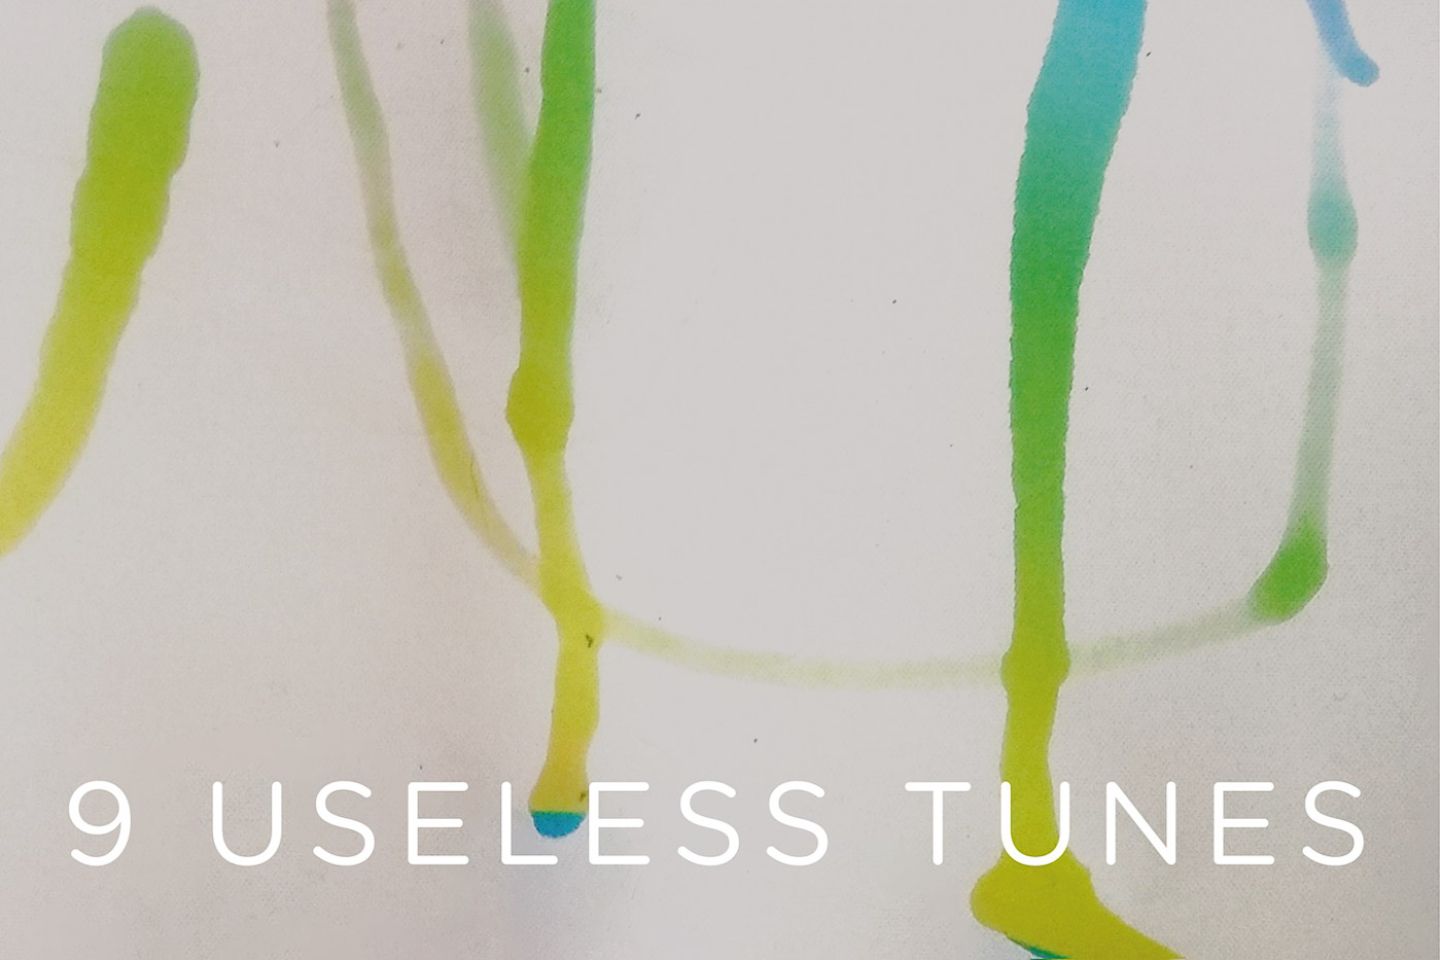 Tommaso Mantelli “9 Useless Tunes” (Shyrec/Lesder, 2020)